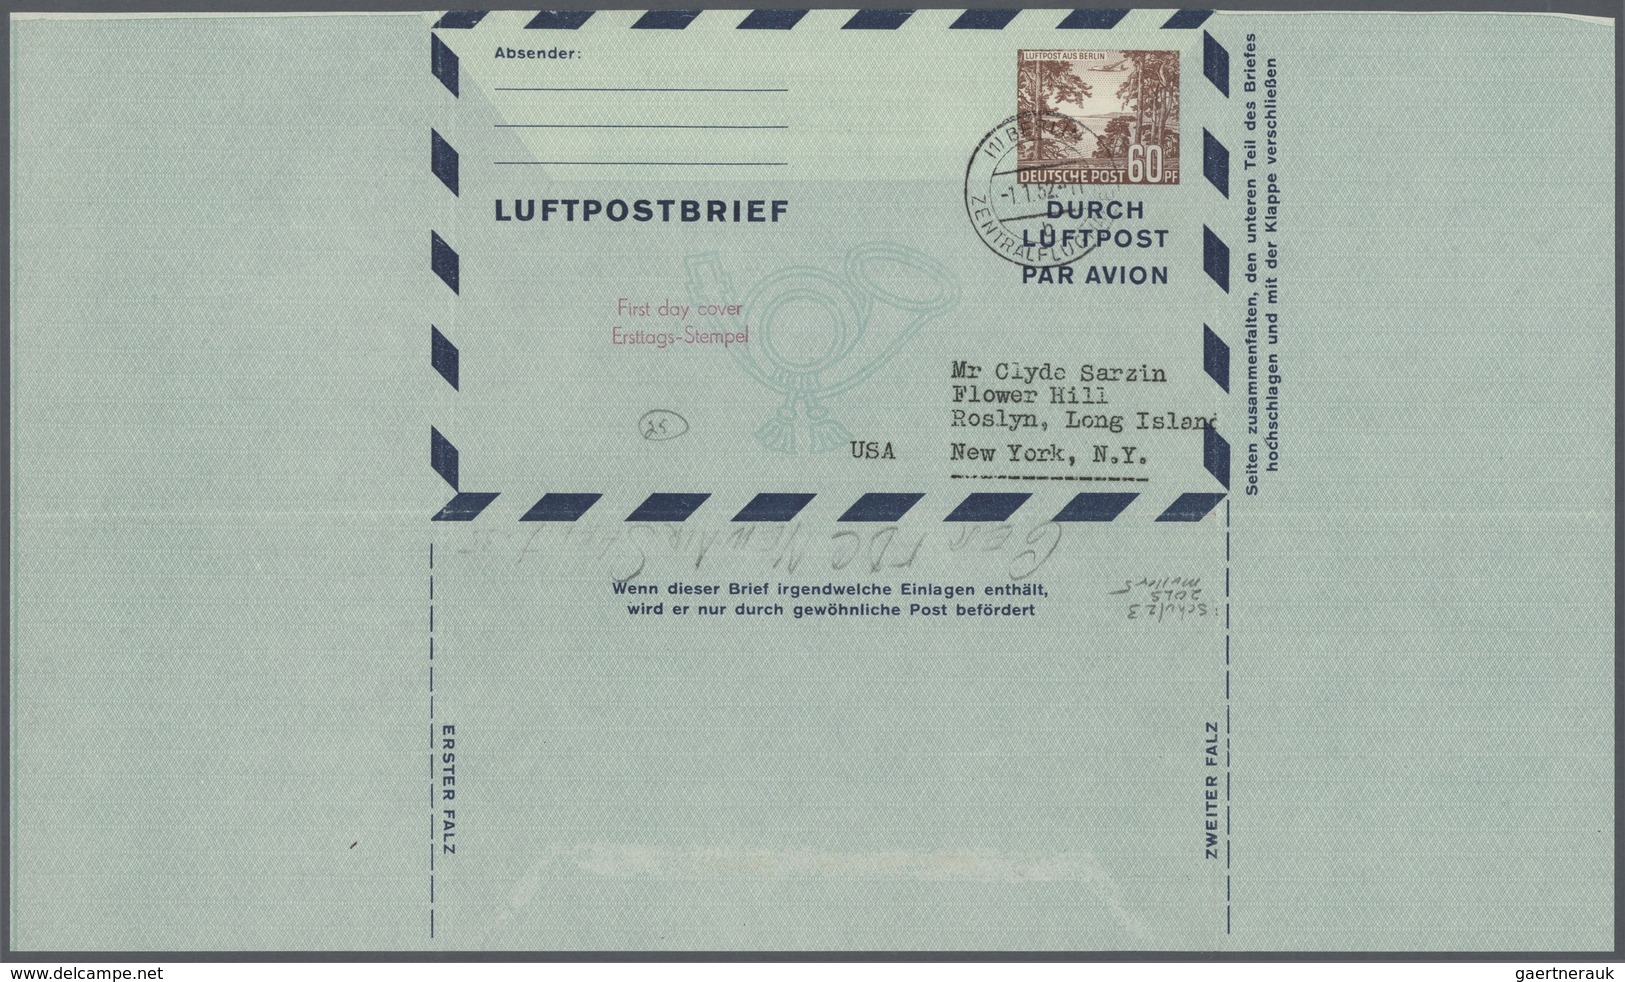 32418 Bundesrepublik und Berlin: Ab 1948. Spezialsammlung LUFTPOST-FALTBRIEFE Berlin/Bizone/Bund. Extrem d